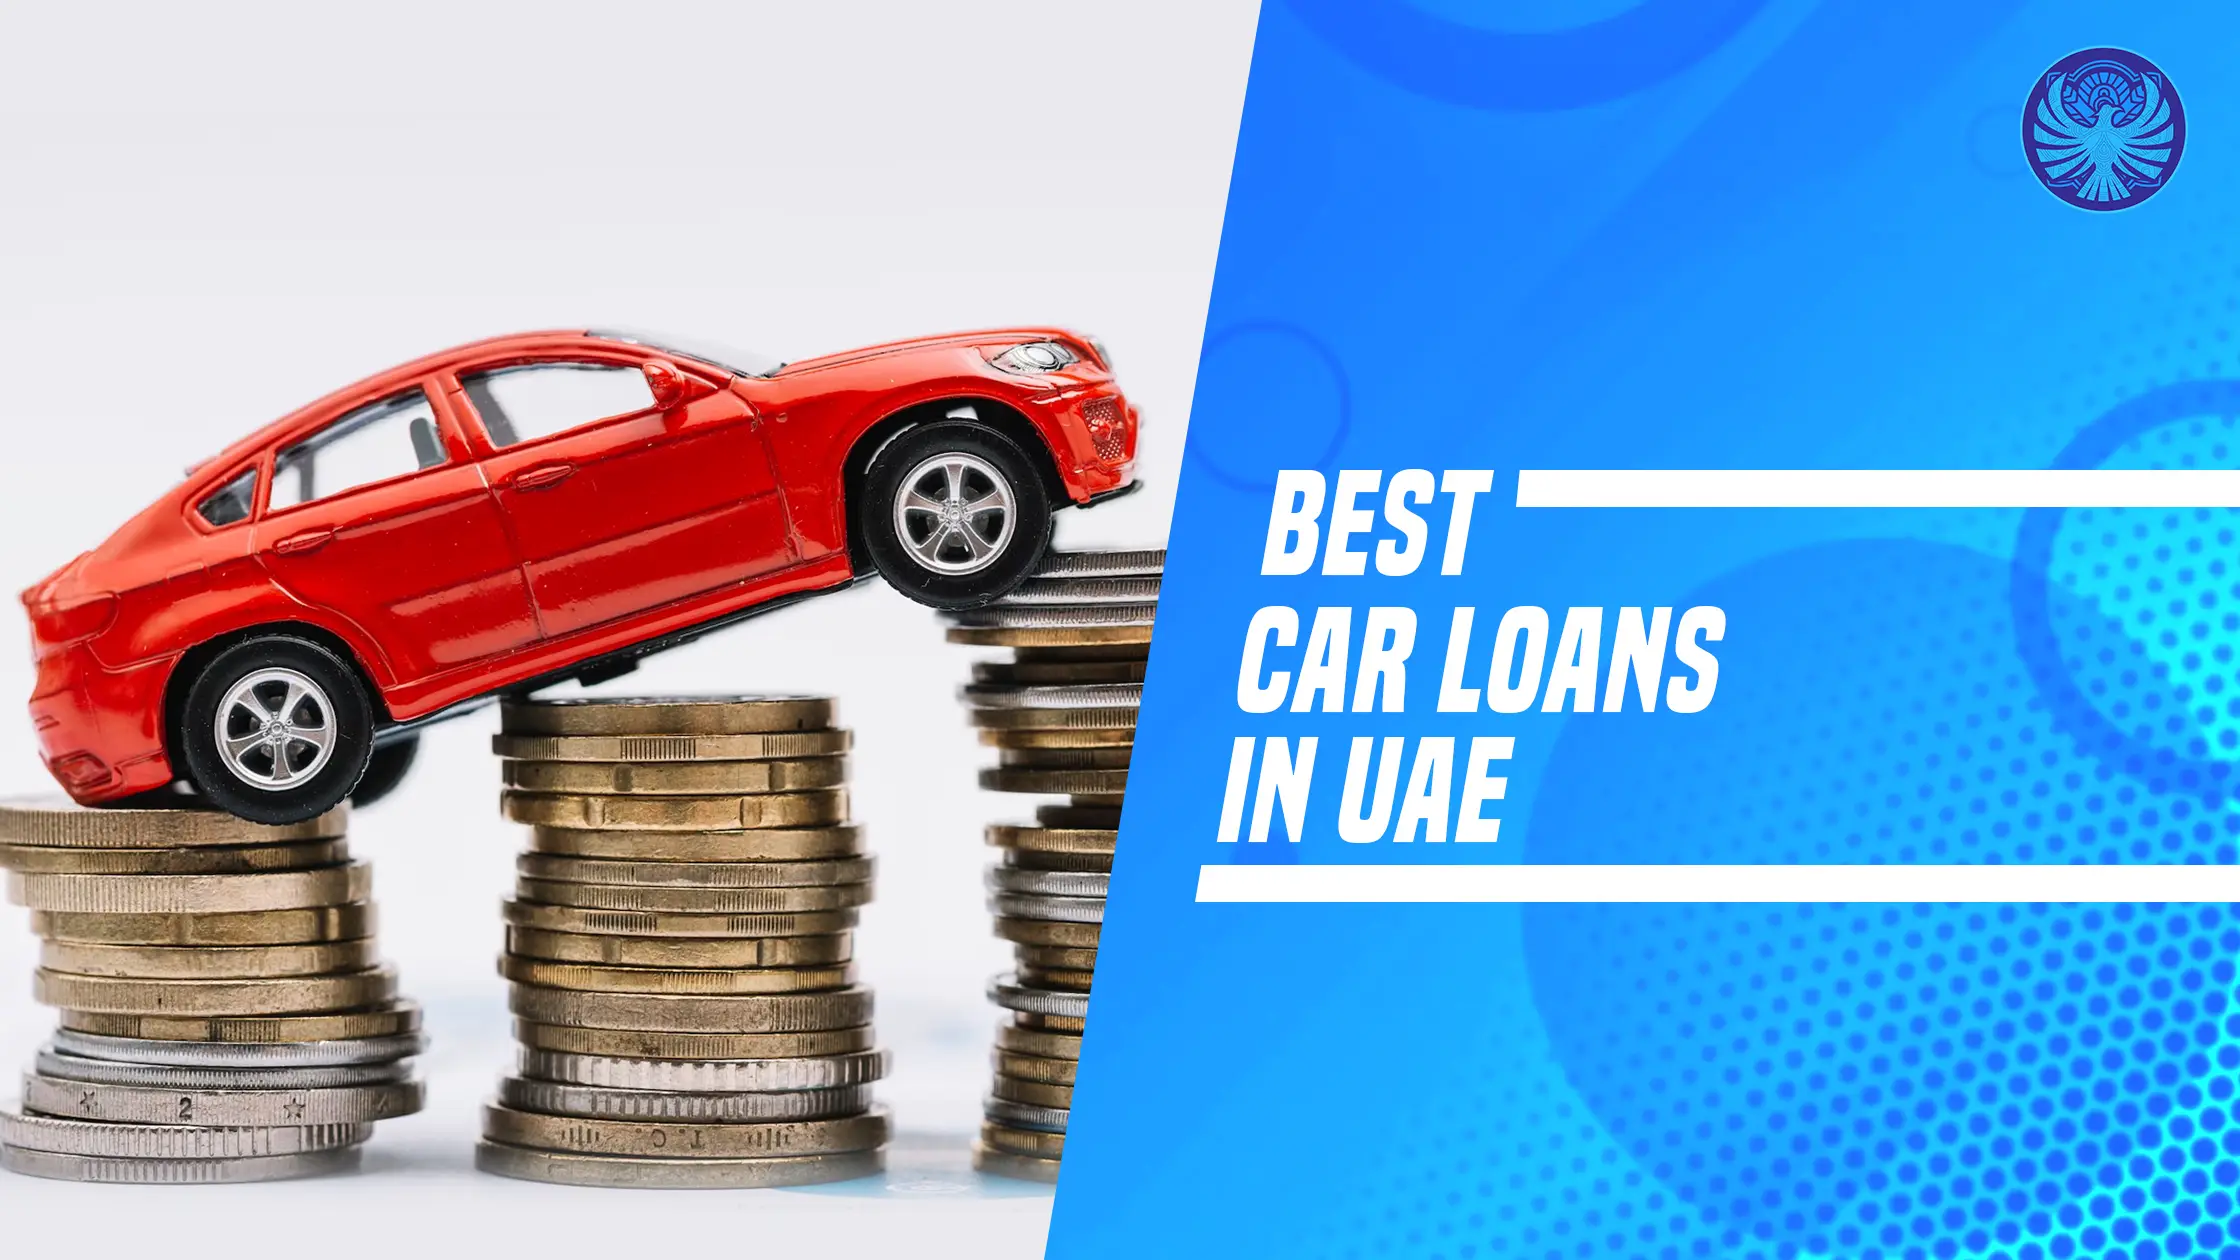 The Best Car Loans In UAE